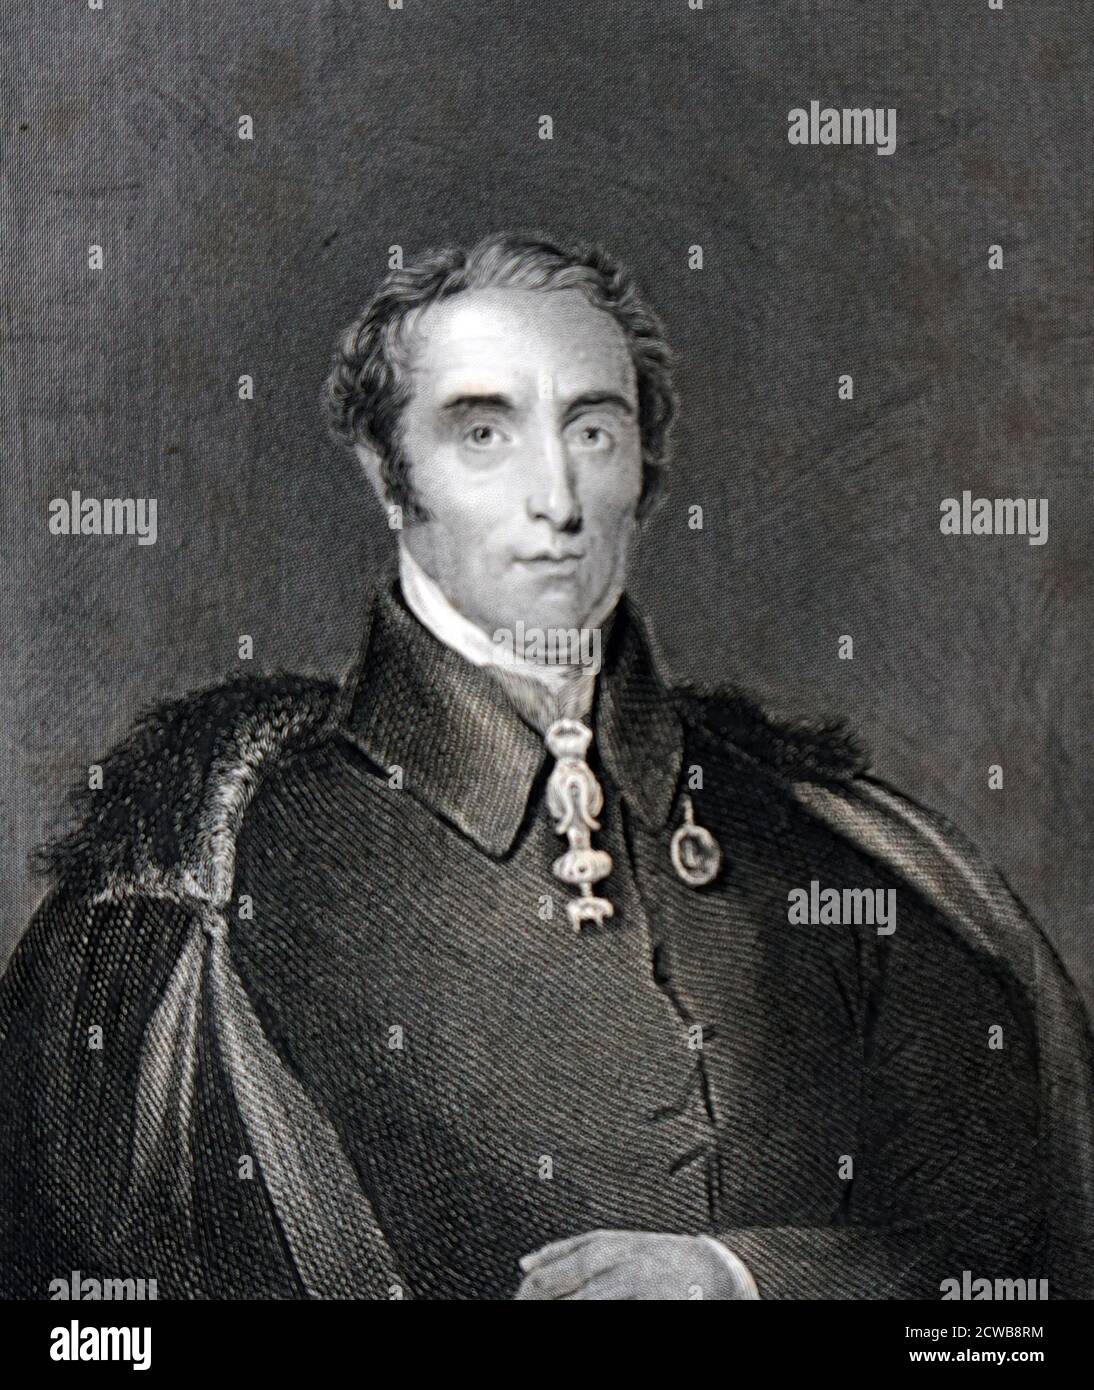 Arthur Wellesley, 1er duc de Wellington (1er mai 1769 - 14 septembre 1852) était un soldat anglo-irlandais et un homme d'État conservateur, qui était l'un des principaux personnages militaires et politiques de la Grande-Bretagne du XIXe siècle, servant deux fois comme Premier ministre. Il remporte une victoire remarquable contre Napoléon à la bataille de Waterloo en 1815. Banque D'Images